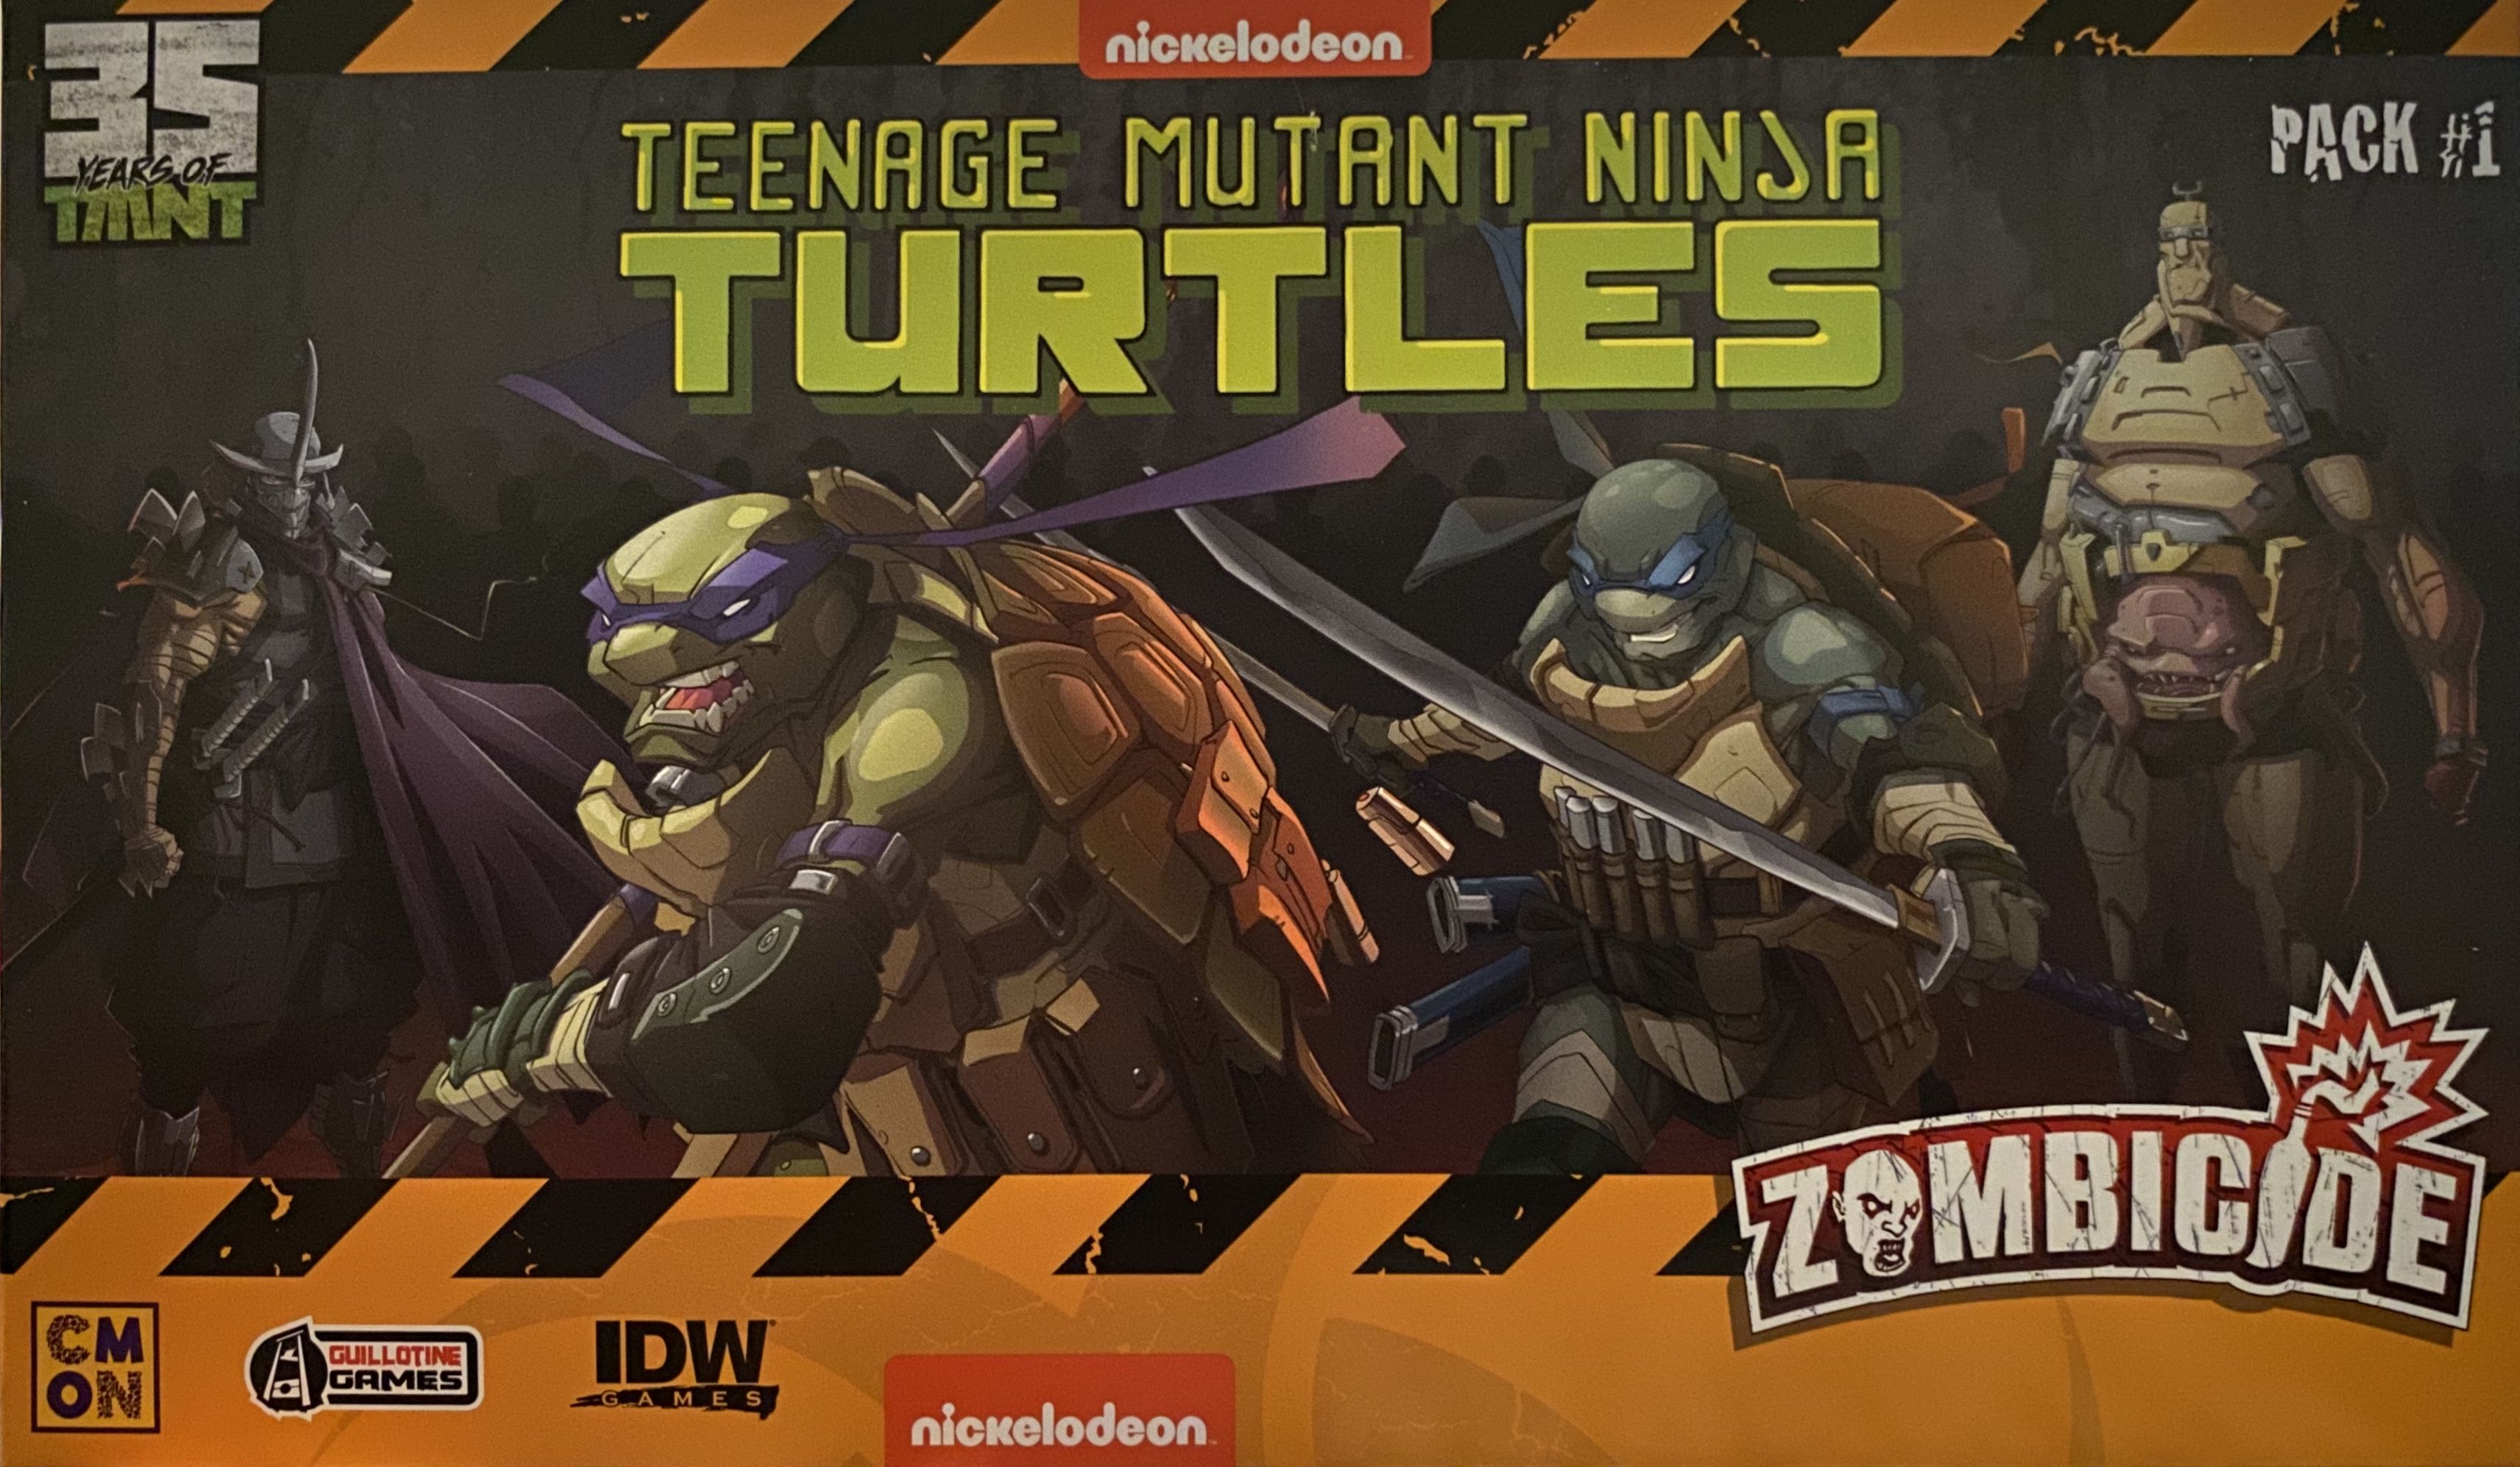 Zombicide: Teenage Mutant Ninja Turtles Pack #1